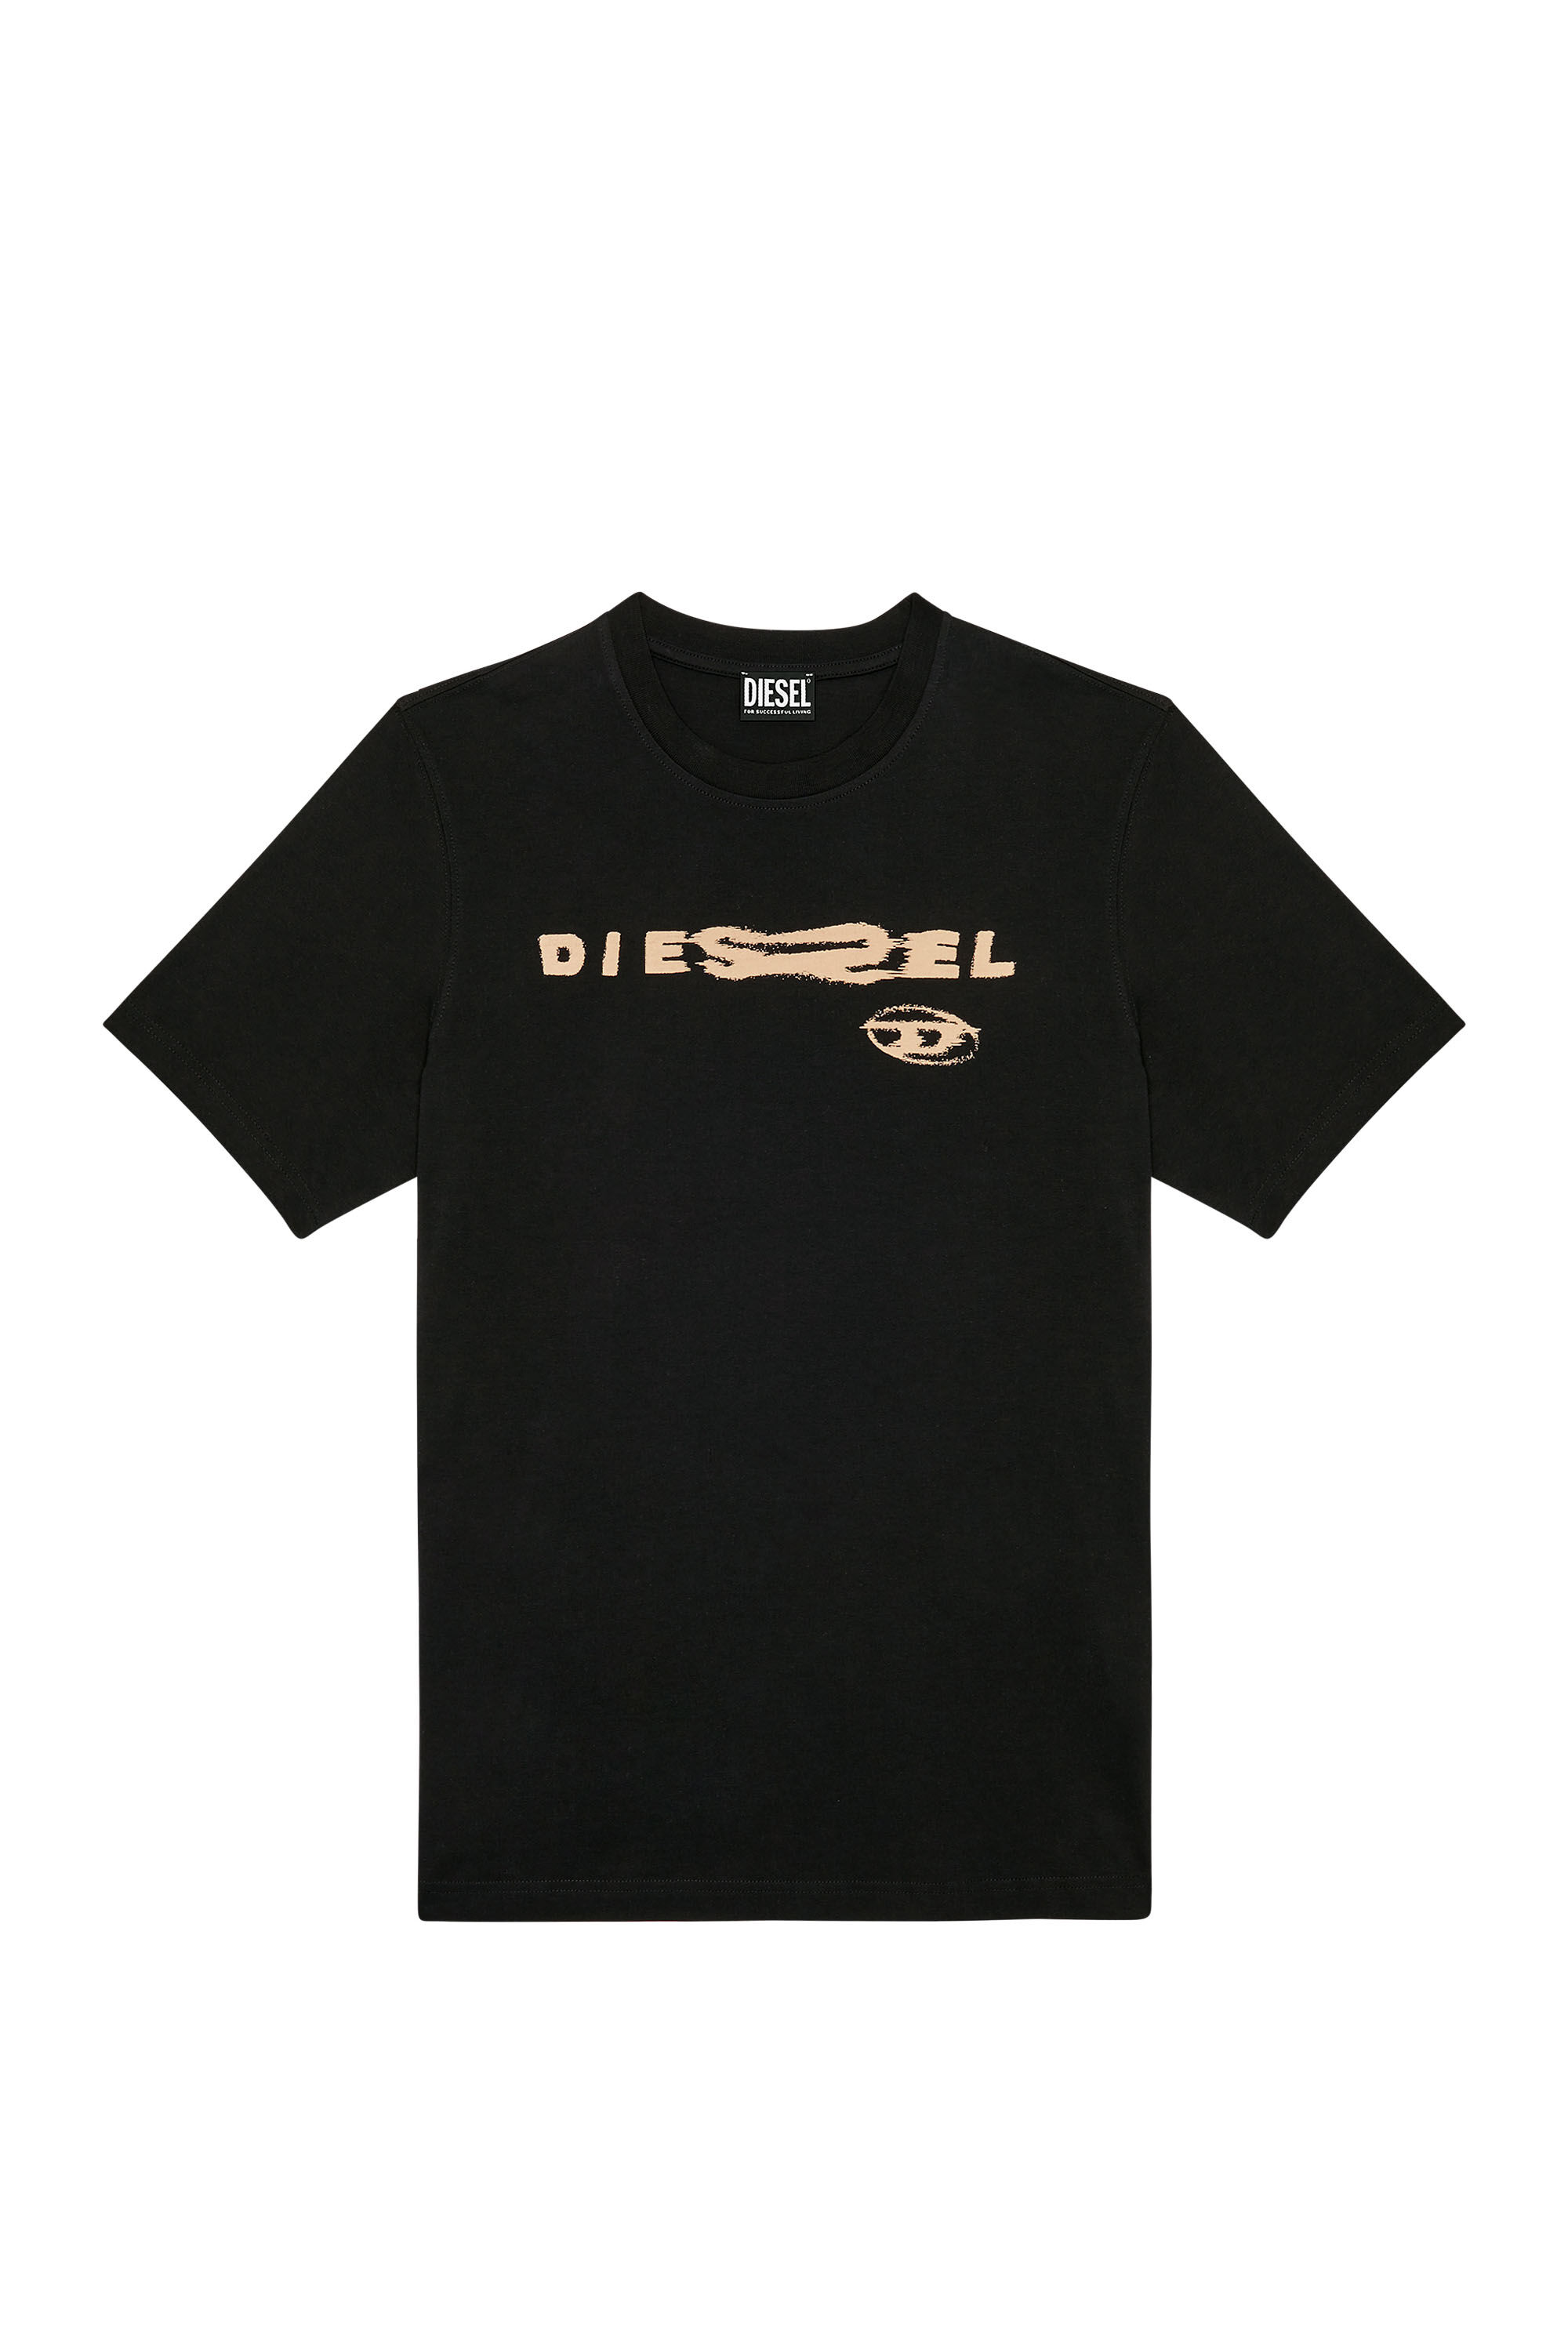 Diesel - T-JUST-G9, Black - Image 2